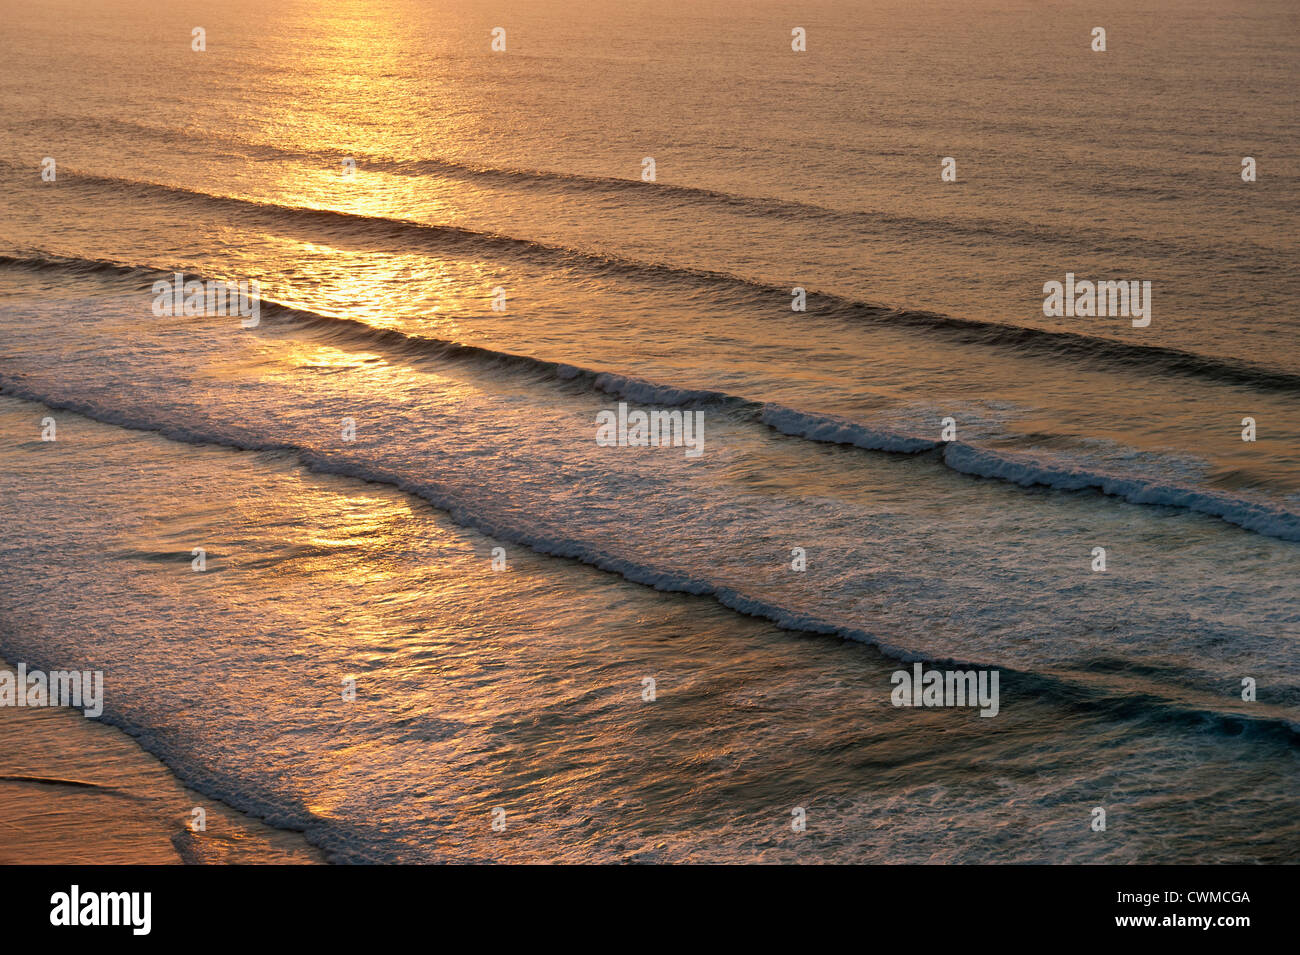 Portugal, Algarve, Lagos, vue sur l'océan Atlantique avec des vagues au crépuscule Banque D'Images